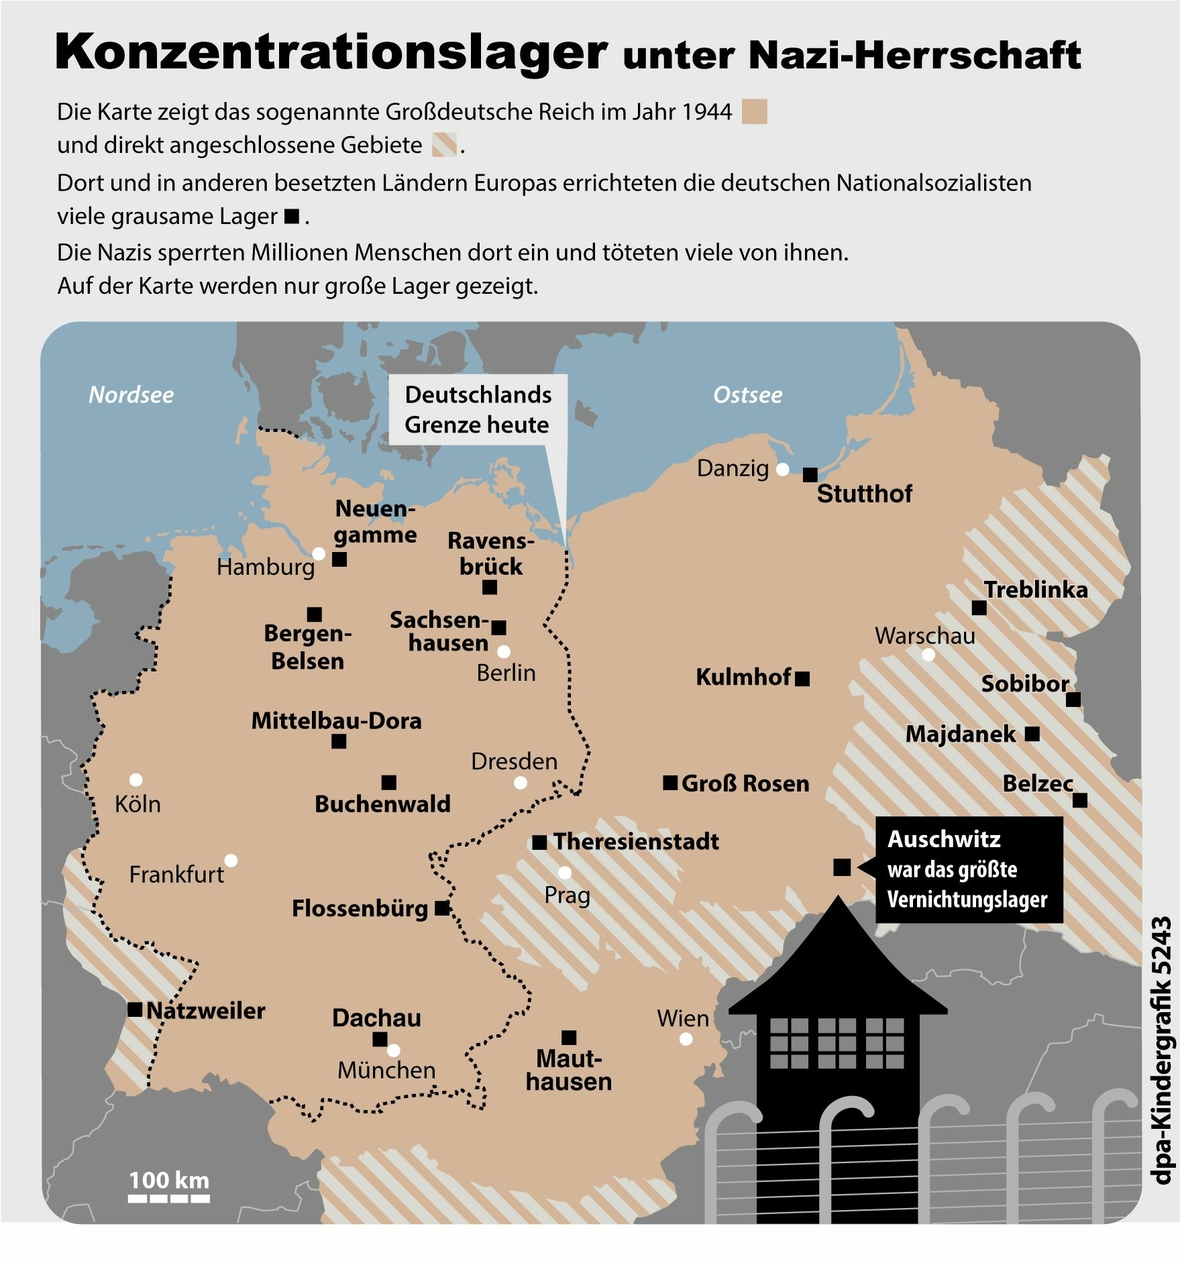 Übersicht über die großen Konzentrationslager während der Herrschaft der Nationalsozialisten.